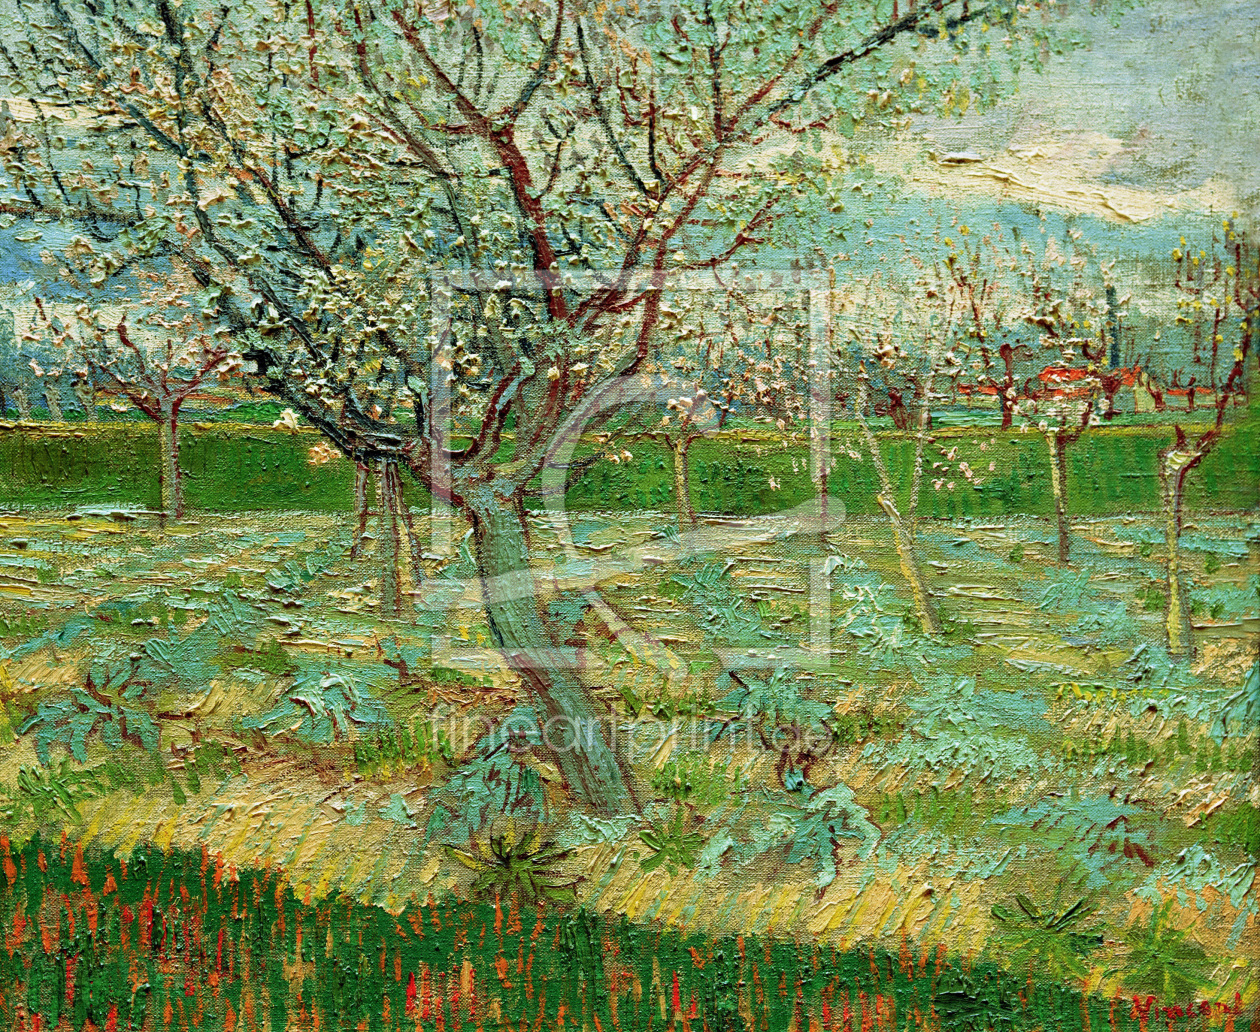 Bild-Nr.: 30003214 van Gogh / Orchard in Blossom / 1888 erstellt von van Gogh, Vincent